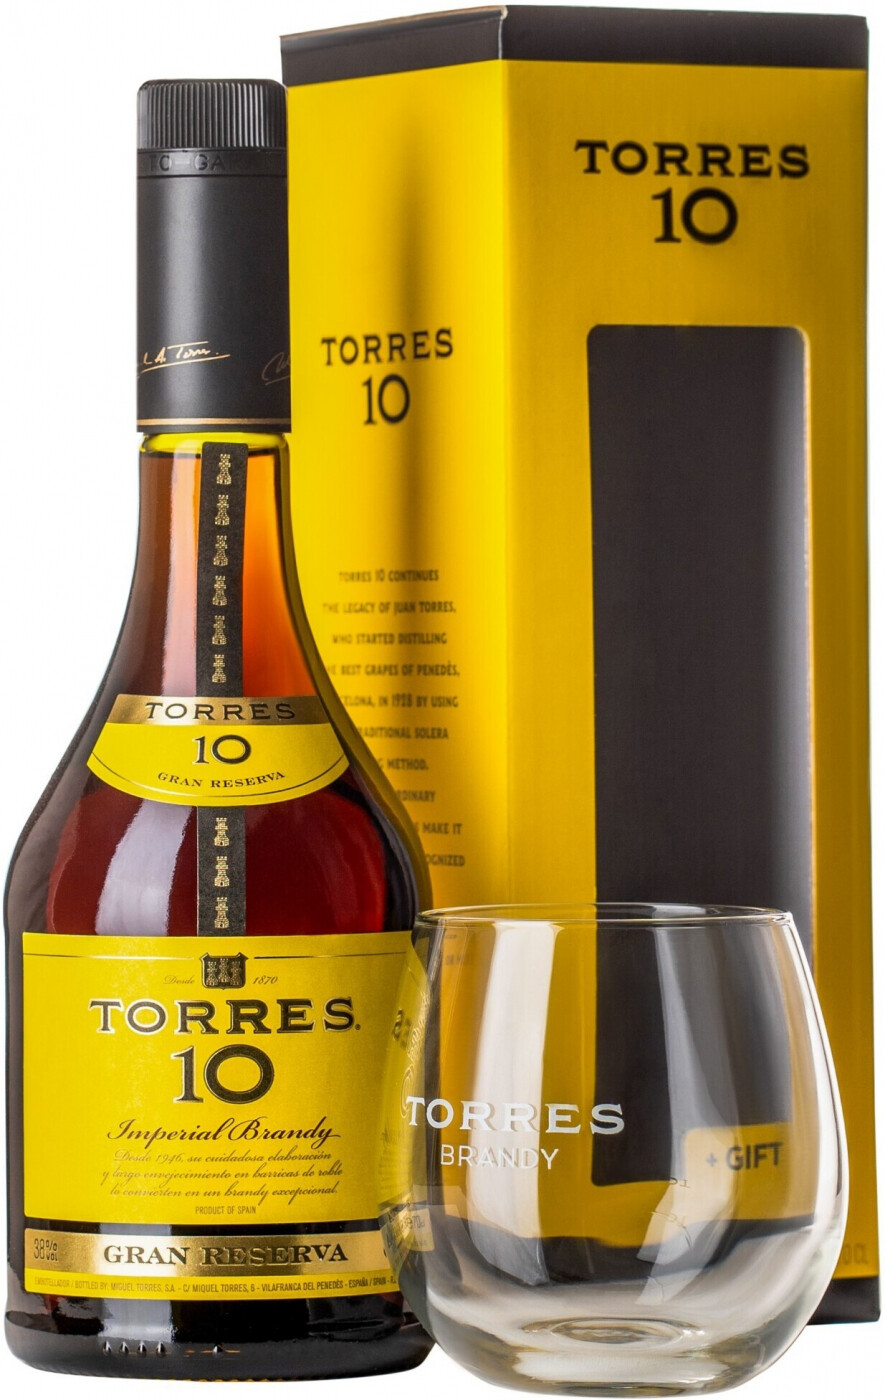 Torres Gran Reserva 10 Brandy set of 2 glass original glass tumbler 